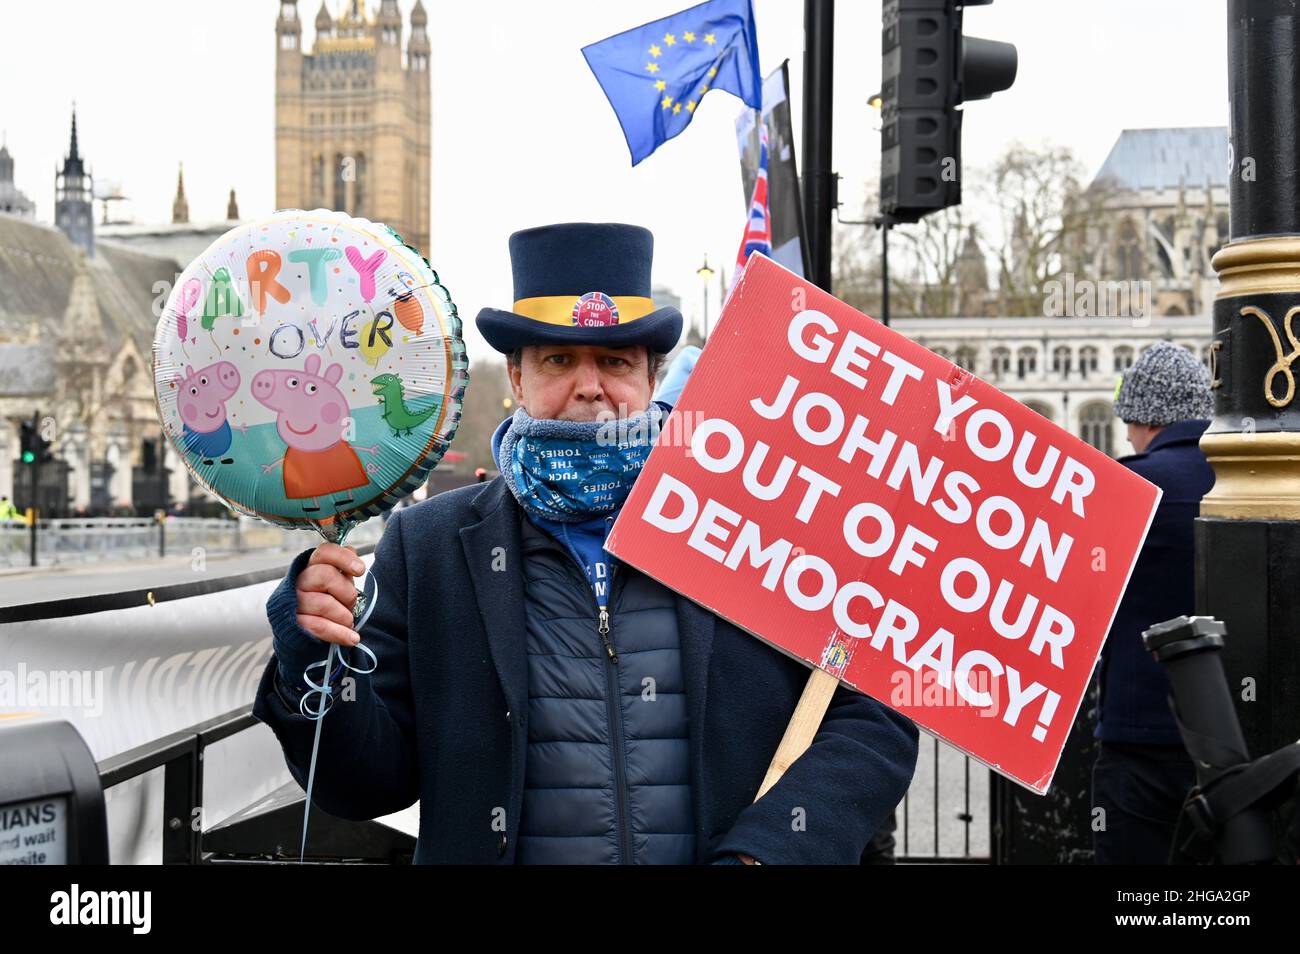 Londres, Royaume-Uni.Steve Bray, de SODEM, a protesté en faveur du renvoi de Boris Johnson au poste de Premier ministre.Il est photographié avec un ballon « Party's Over » de Peppa Pig.Chambres du Parlement, Westminster. Banque D'Images